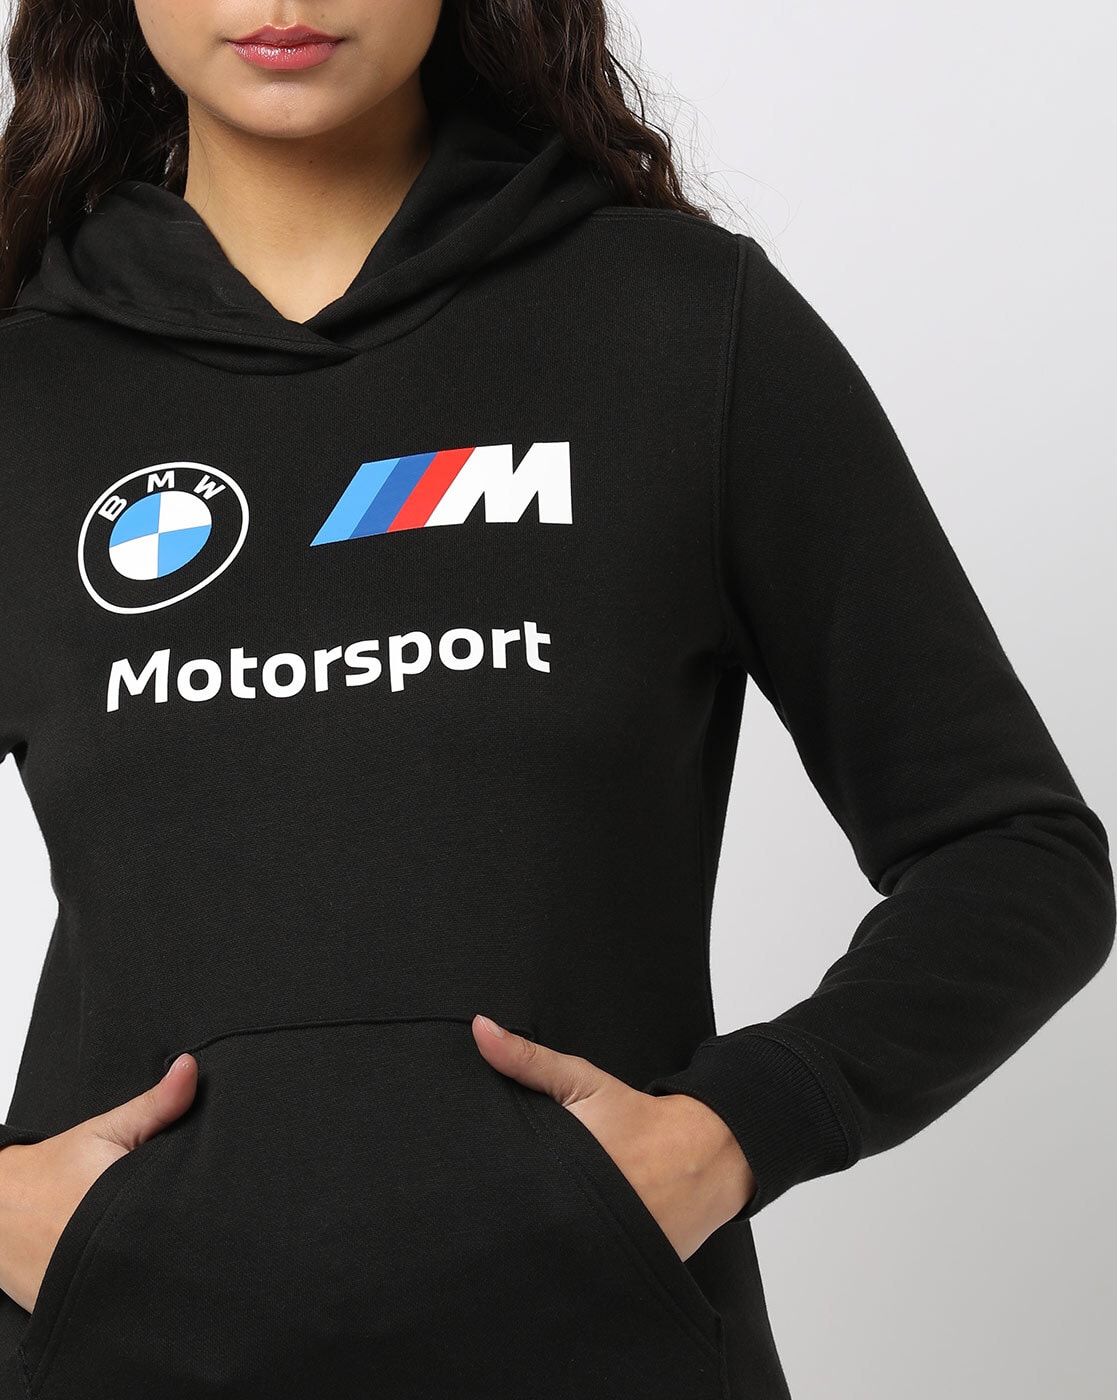 Puma BMW Motorsport MMS Essentials hoodie, black, 59,50 €